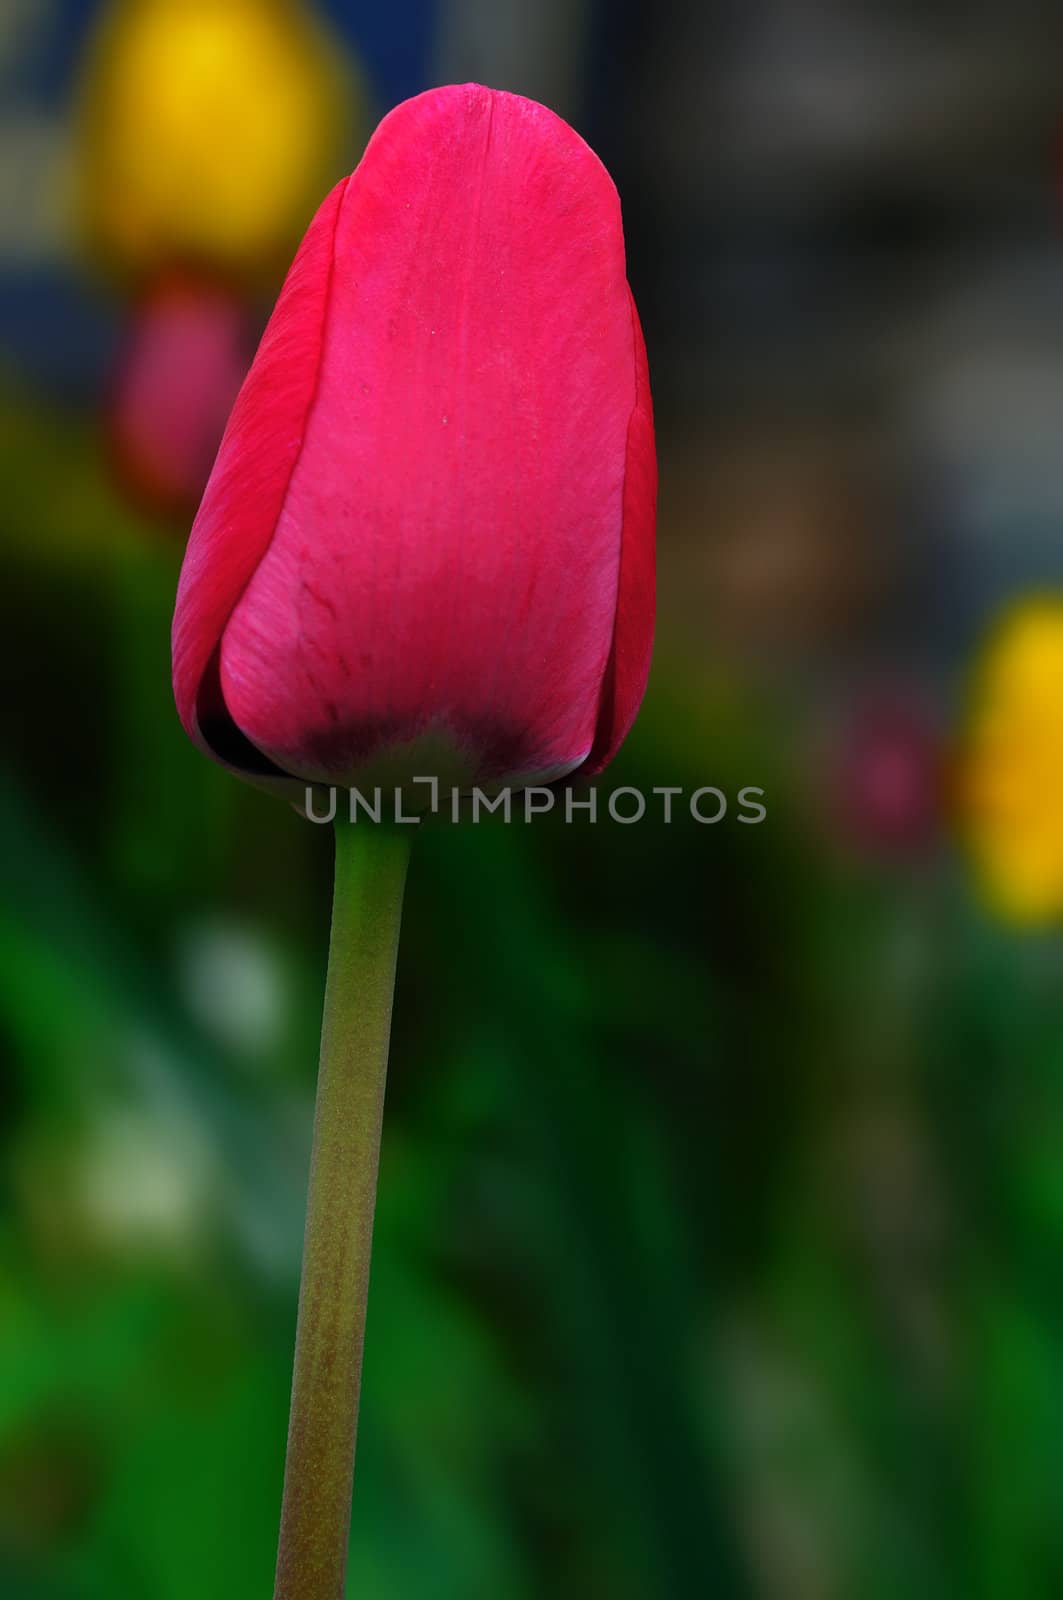 Tulips by pazham